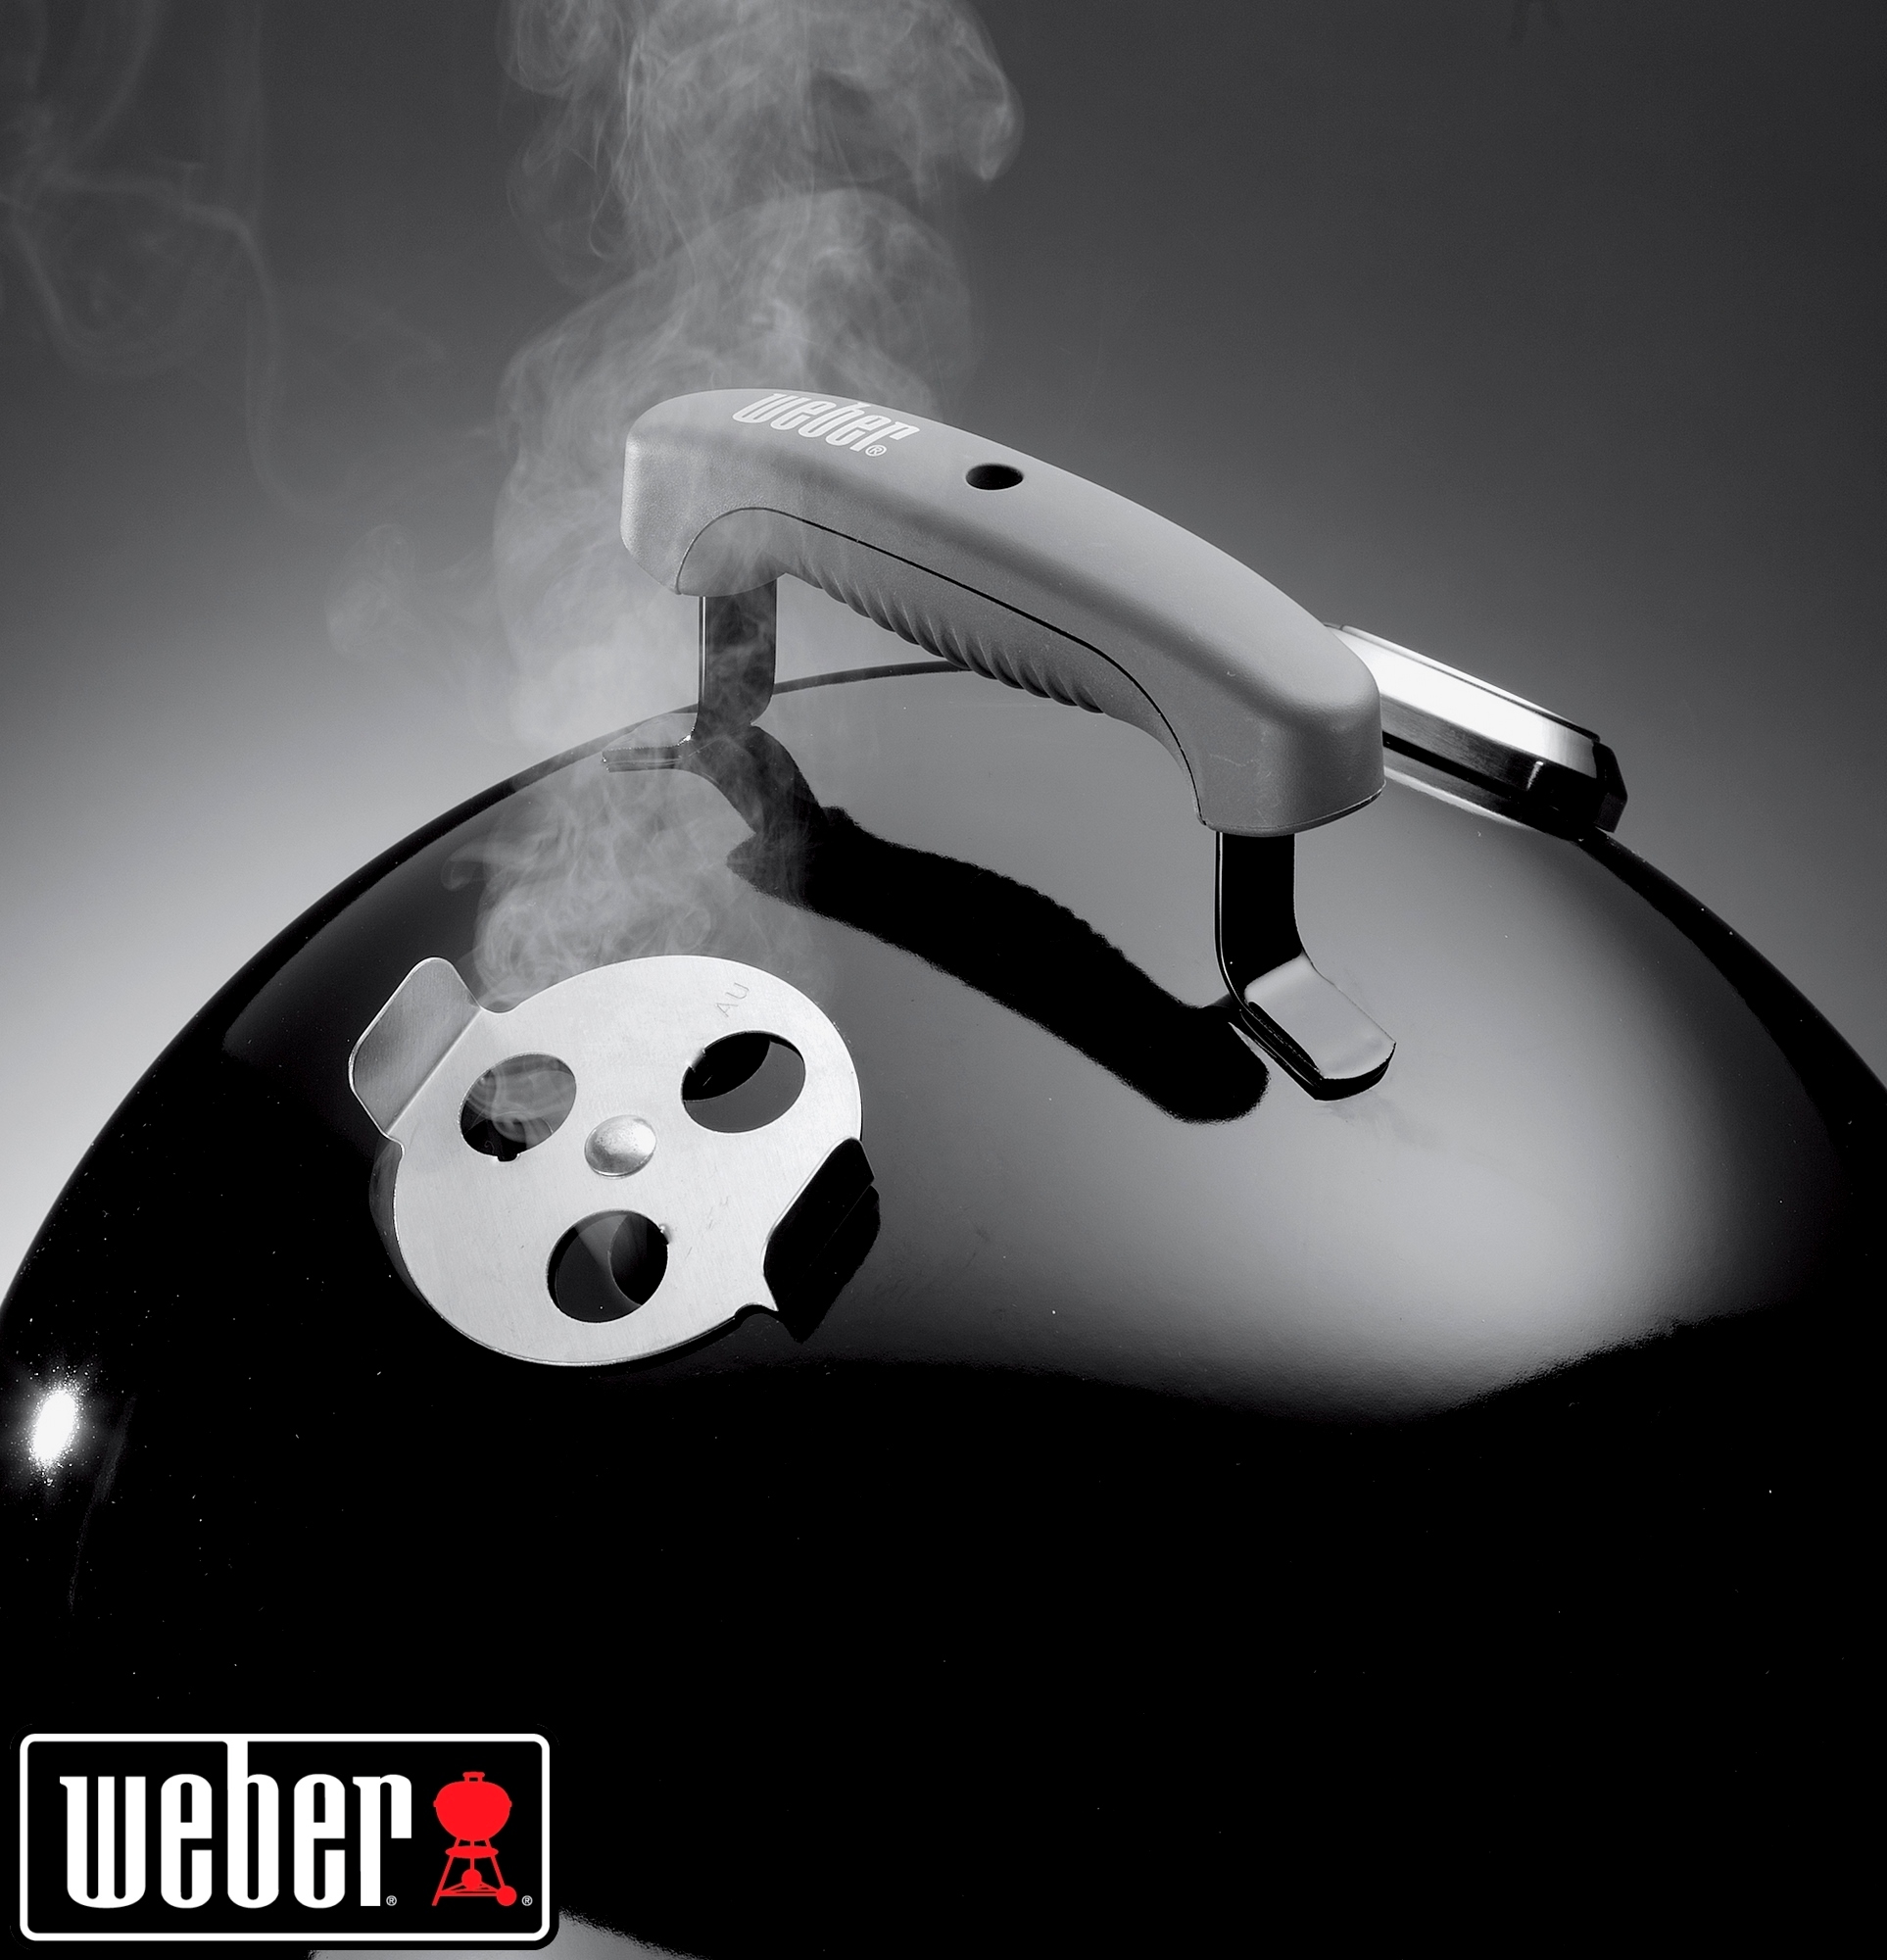 Weber® Smokey Mountain Cooker, 37 cm, Black